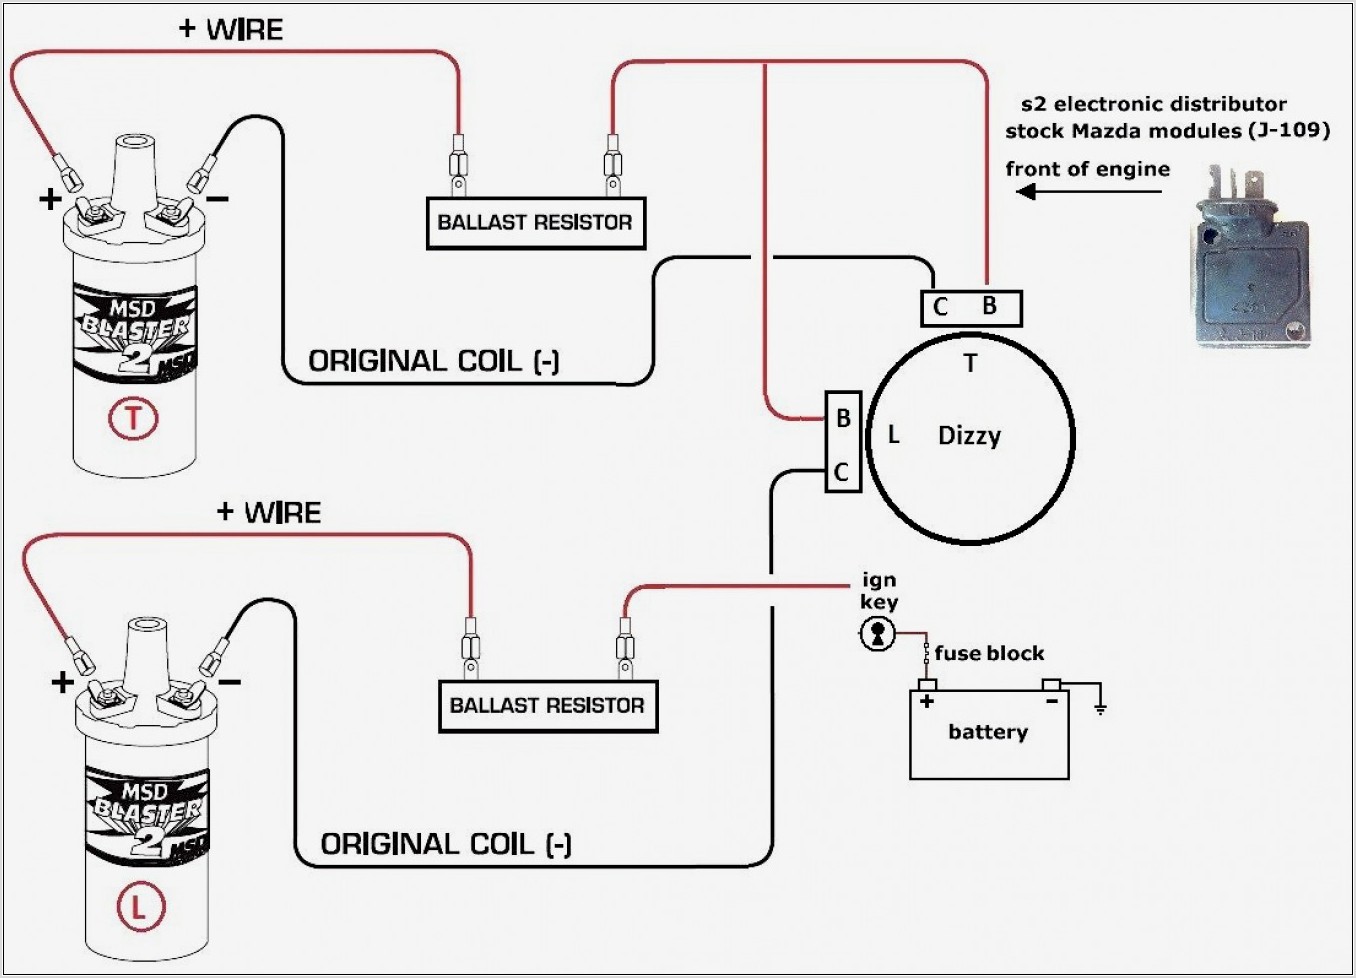 Pertronix Ignitor Ii Wiring Diagram